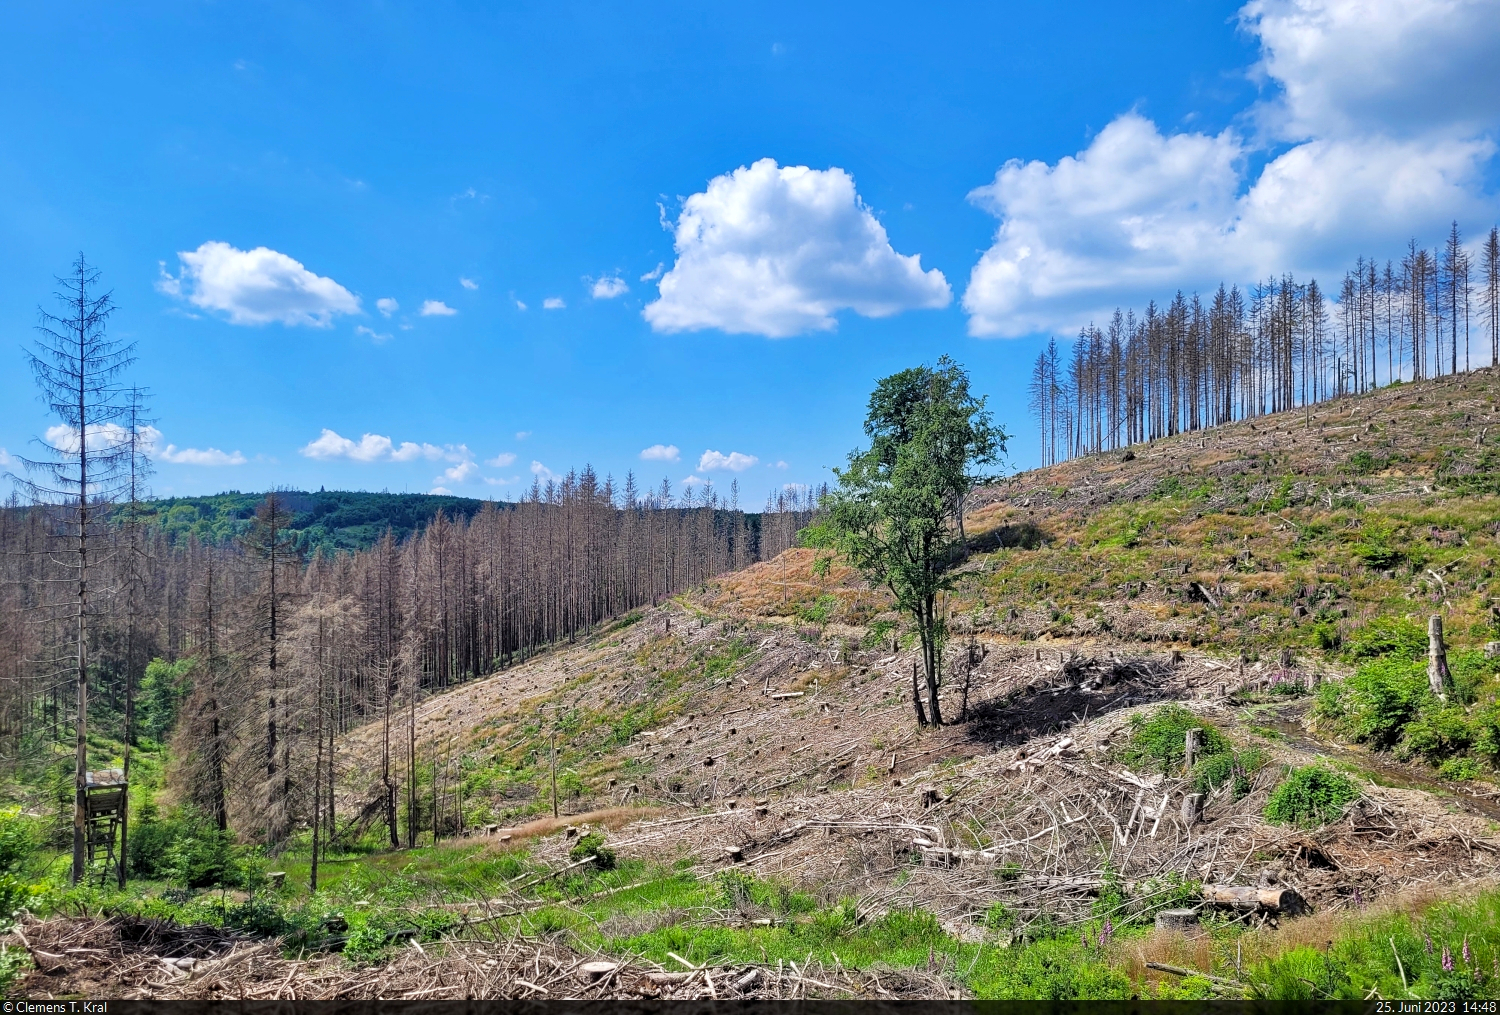 Erschreckender Zustand des Harz-Waldes nahe Clausthal-Zellerfeld. Der Borkenkäfer hat hier sämtliche Nadelbäume befallen, Schatten sucht man bei dem warmen Wetter vergebens.

🕓 25.6.2023 | 14:48 Uhr